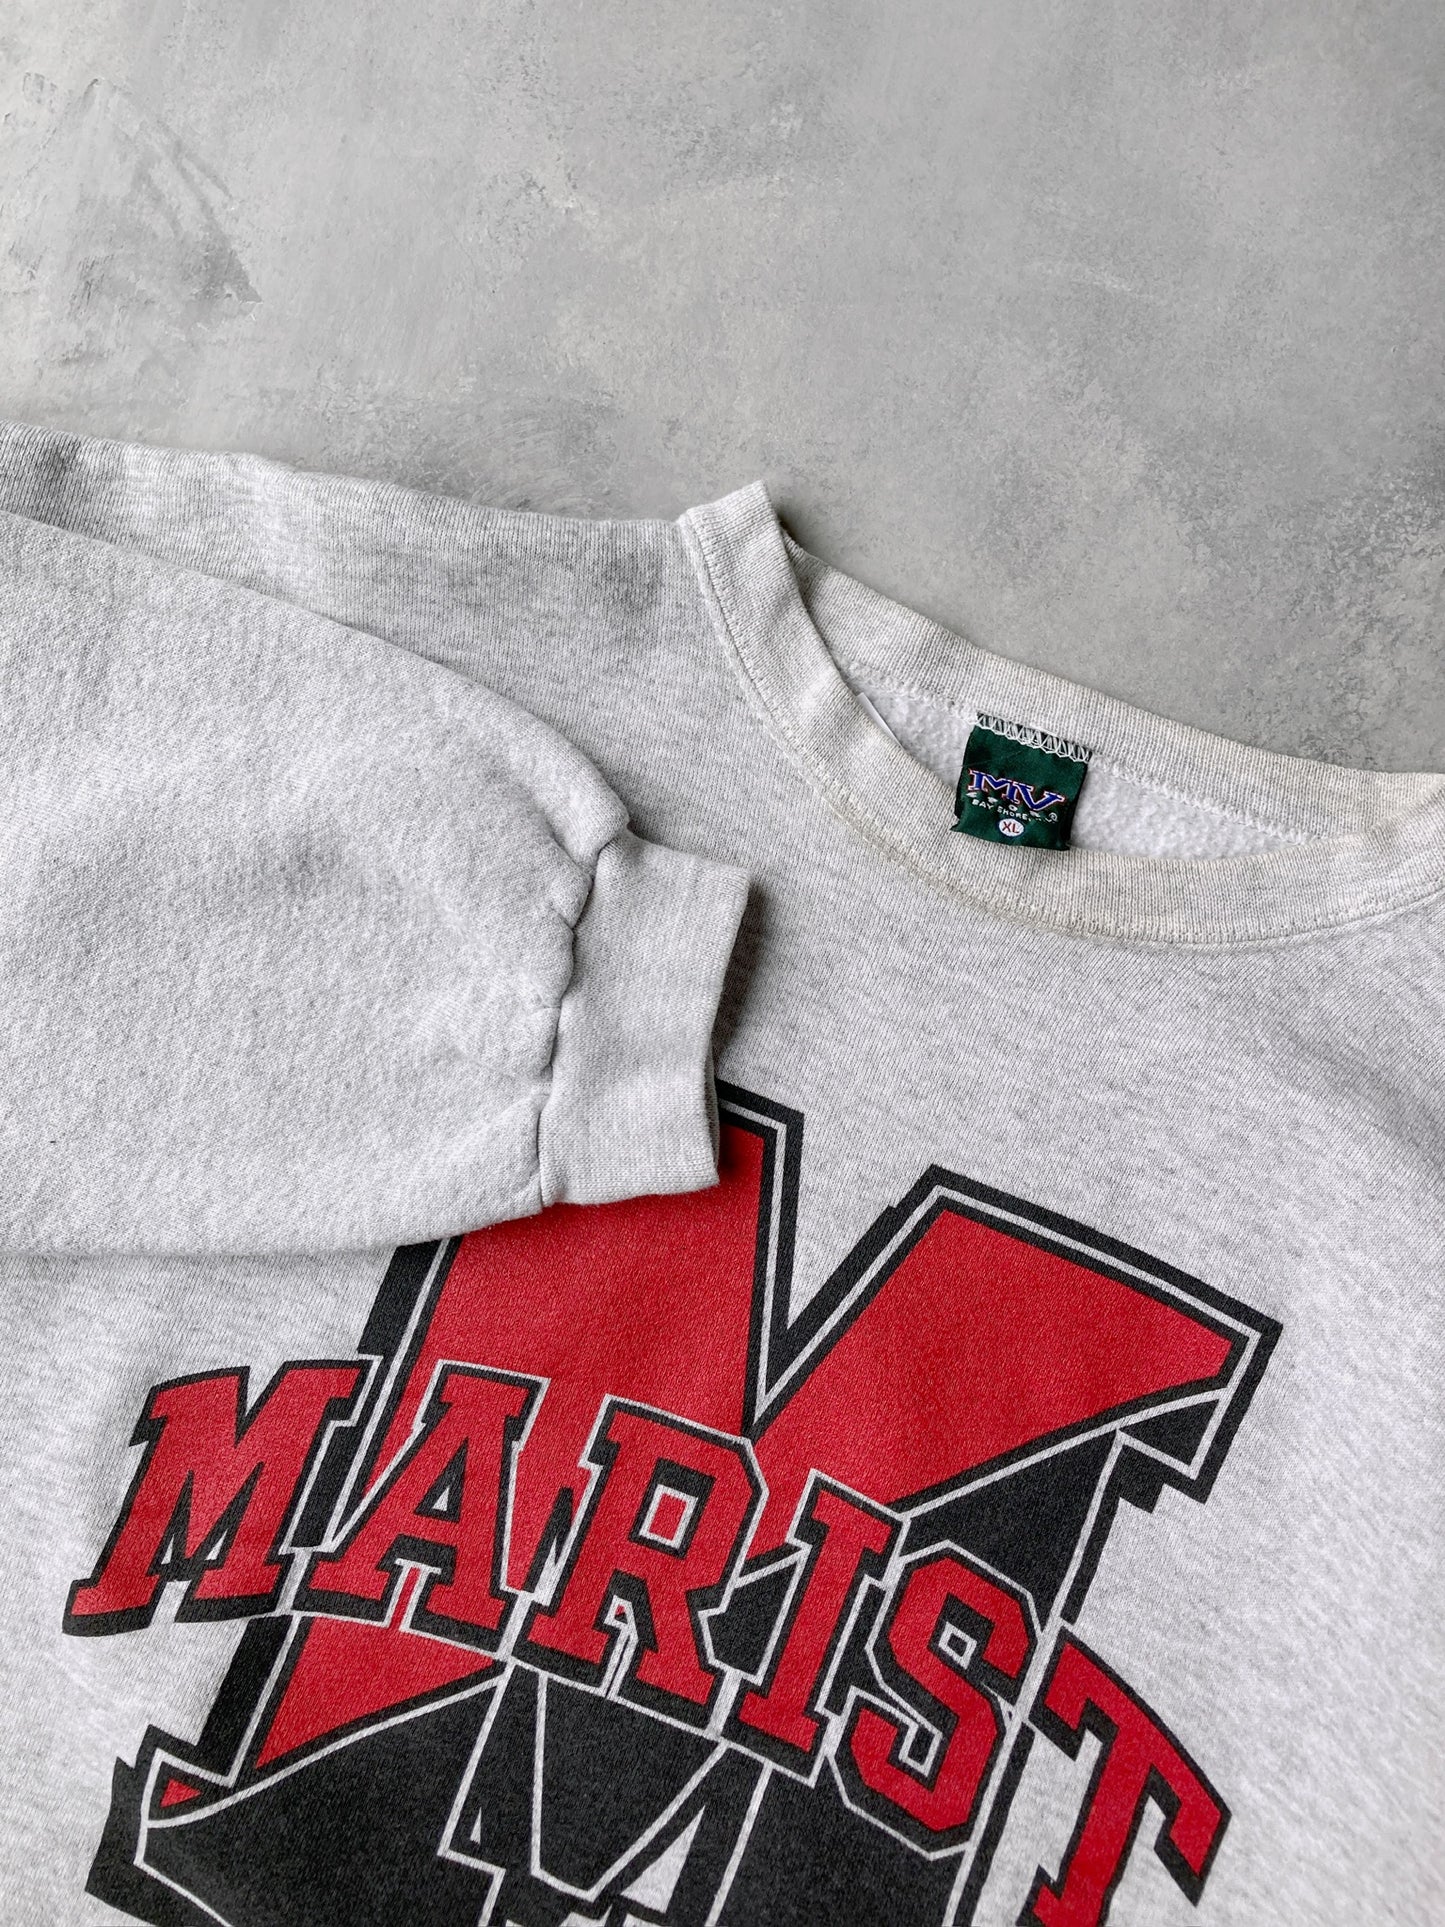 Marist College Sweatshirt 90's - XL